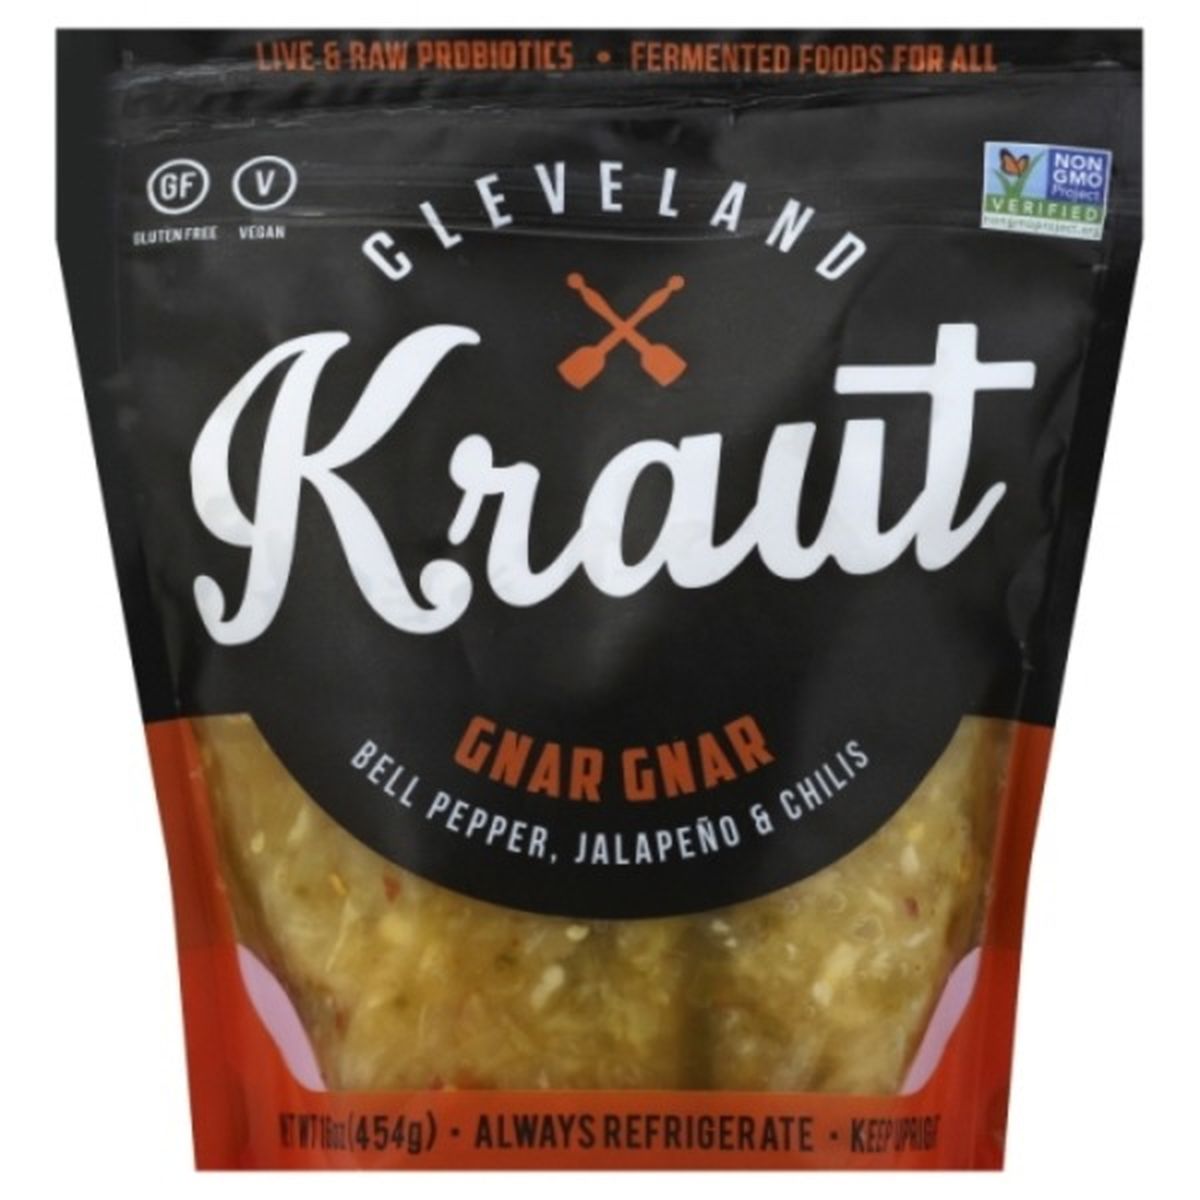 Calories in Cleveland Kraut Sauerkraut, Gnar Gnar